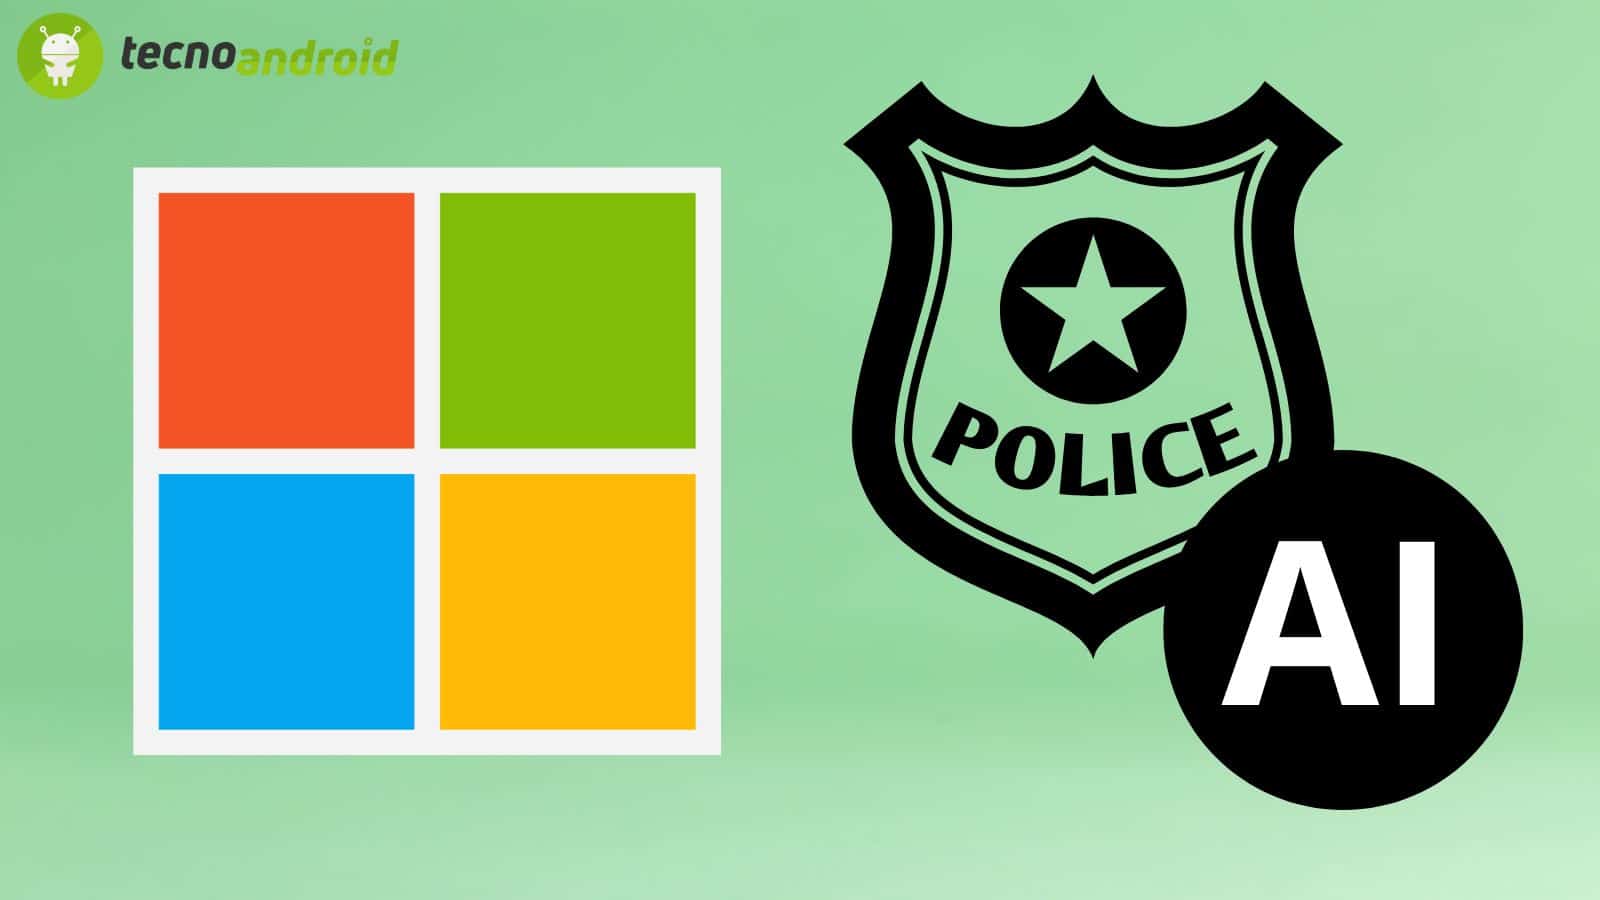 Microsoft vieta alla Polizia di usare l'AI: perché? 